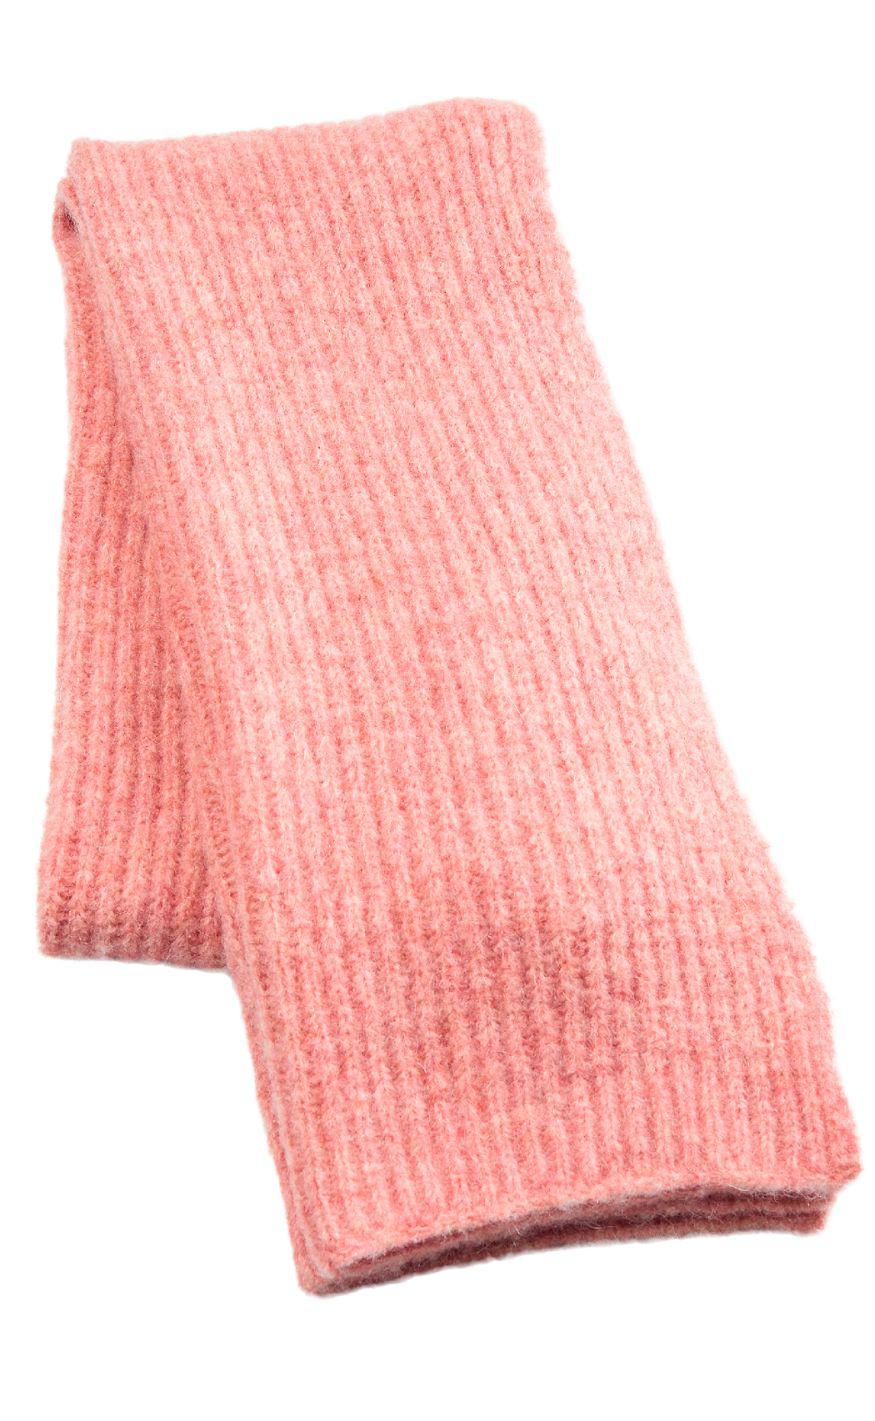 #2 - Nümph Tørklæde - Safir - Shell Pink